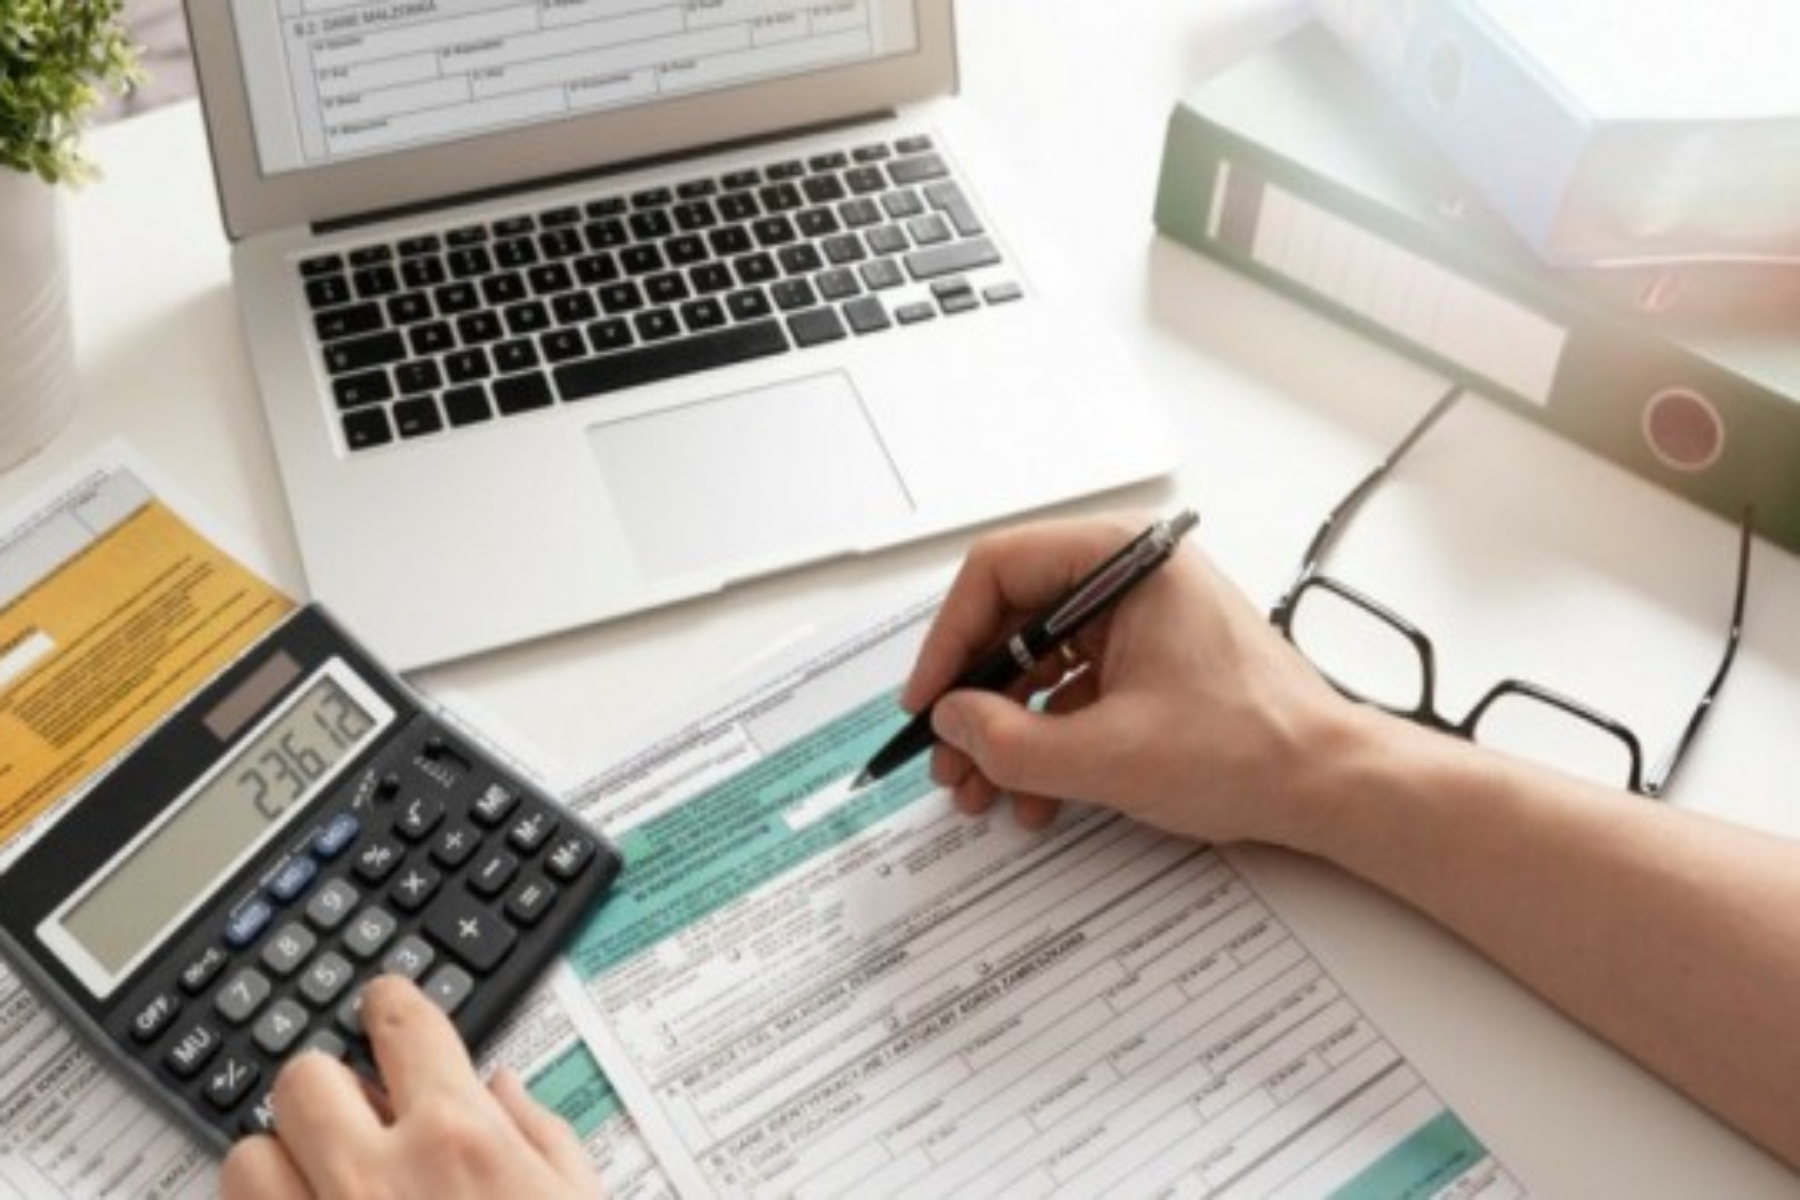 Παράταση φορολογικών δηλώσεων: Οι λογιστές ζητάνε παράταση φορολογικών δηλώσεων τουλάχιστον μέχρι τις 15 Σεπτεμβρίου